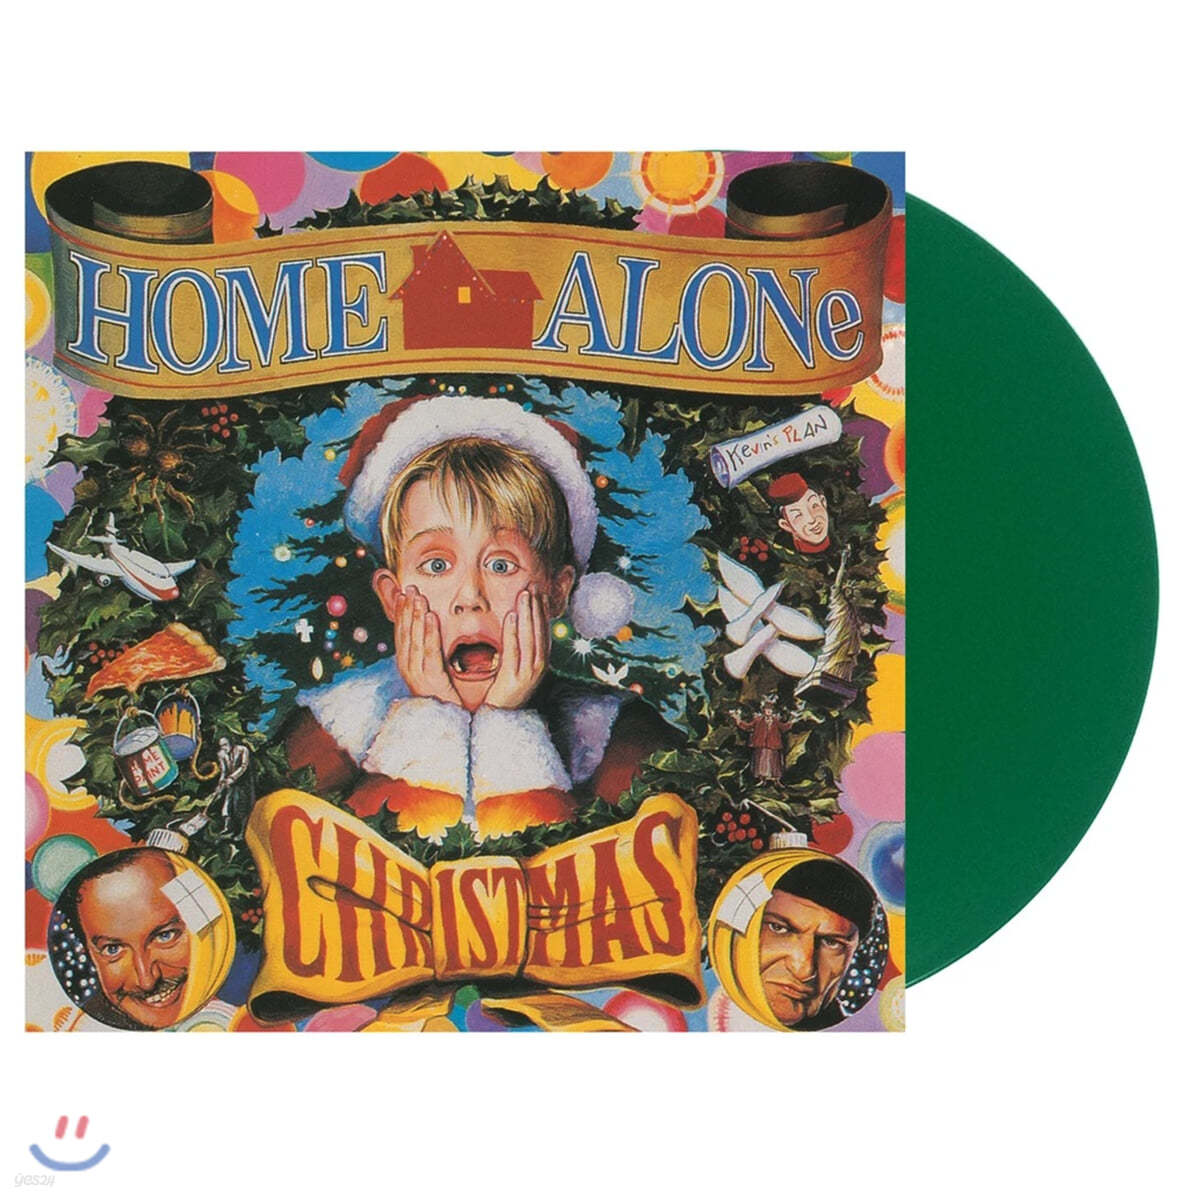 나홀로 집에 영화음악 (Home Alone Christmas OST) [그린 컬러 2LP]